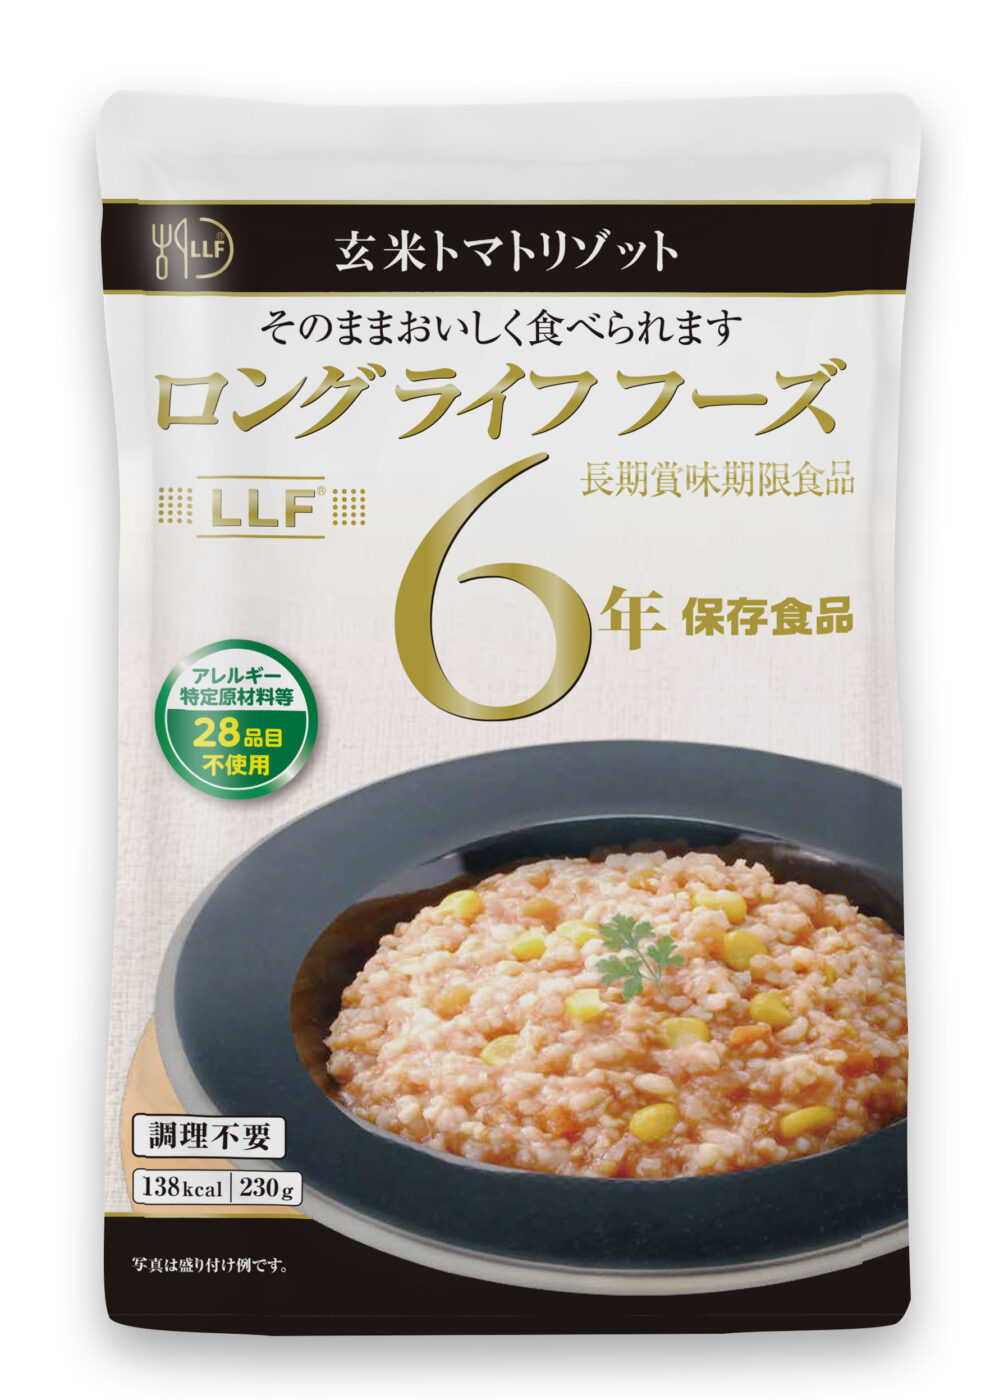 LLF玄米トマトリゾット(賞味期限6年)(50食入)[2723]